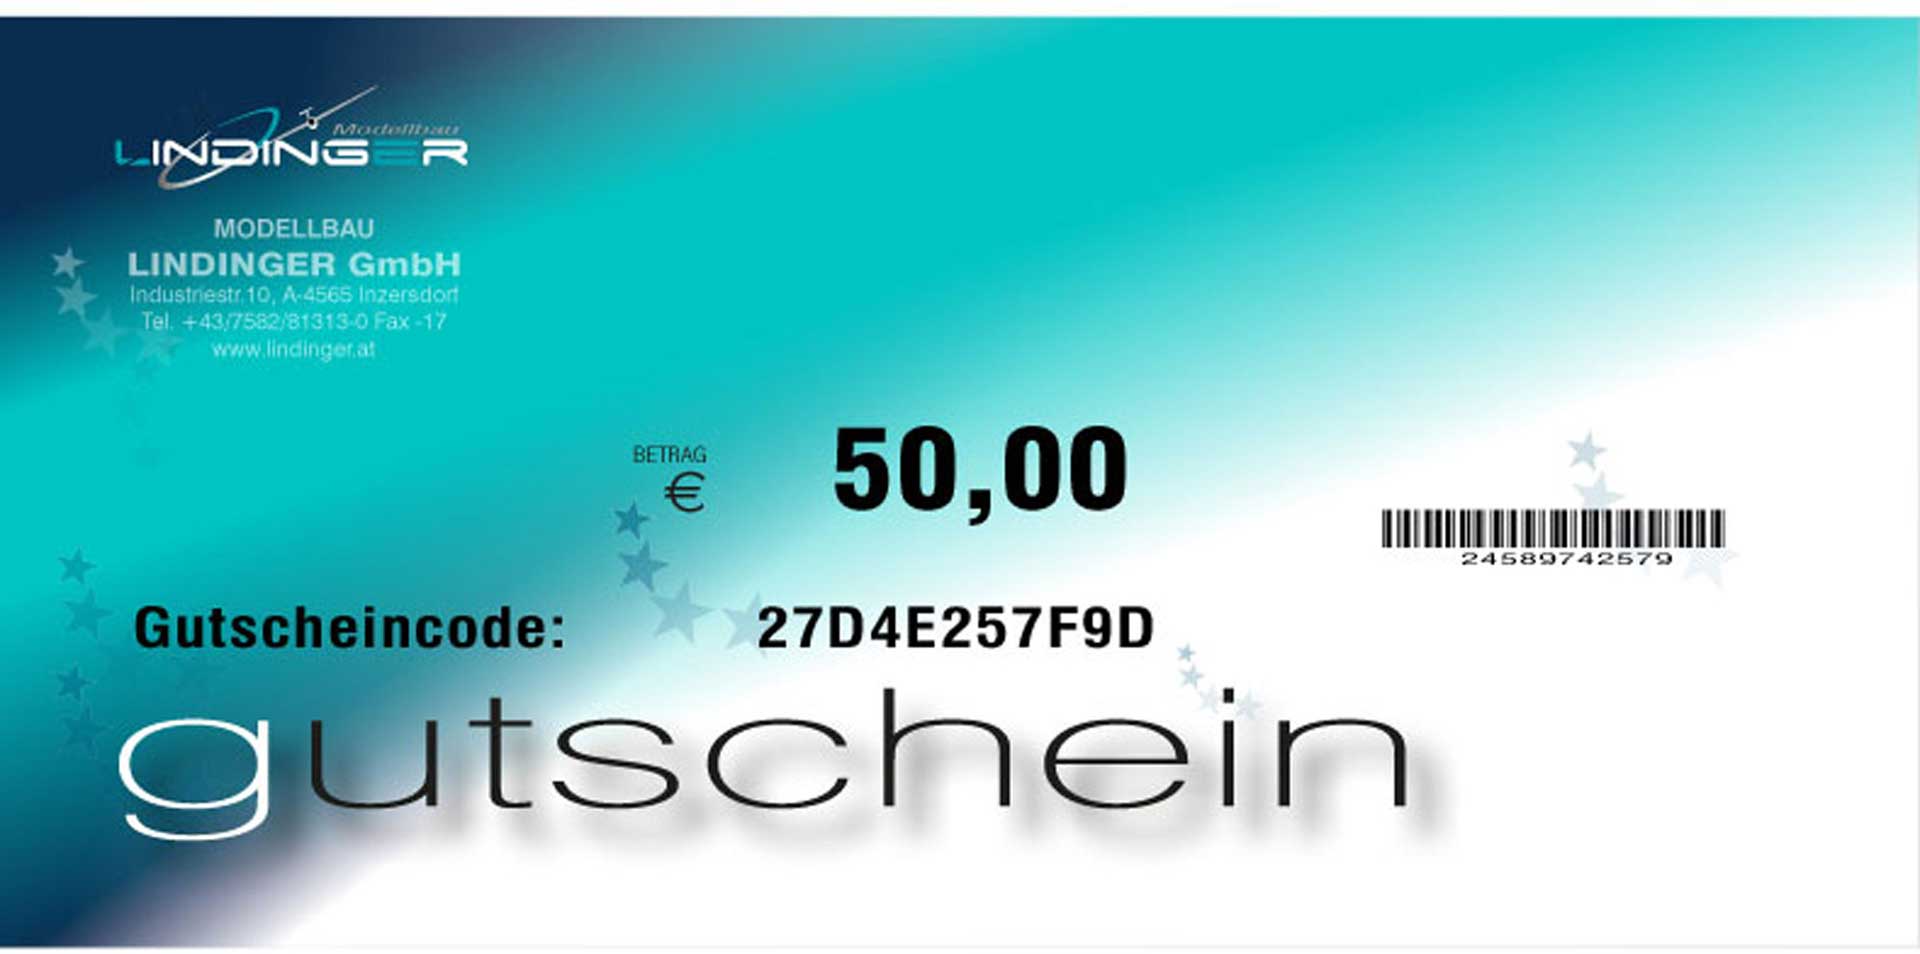 MODELLBAU LINDINGER BON D'ACHAT LINDINGER 50,- EURO PDF par E-MAIL